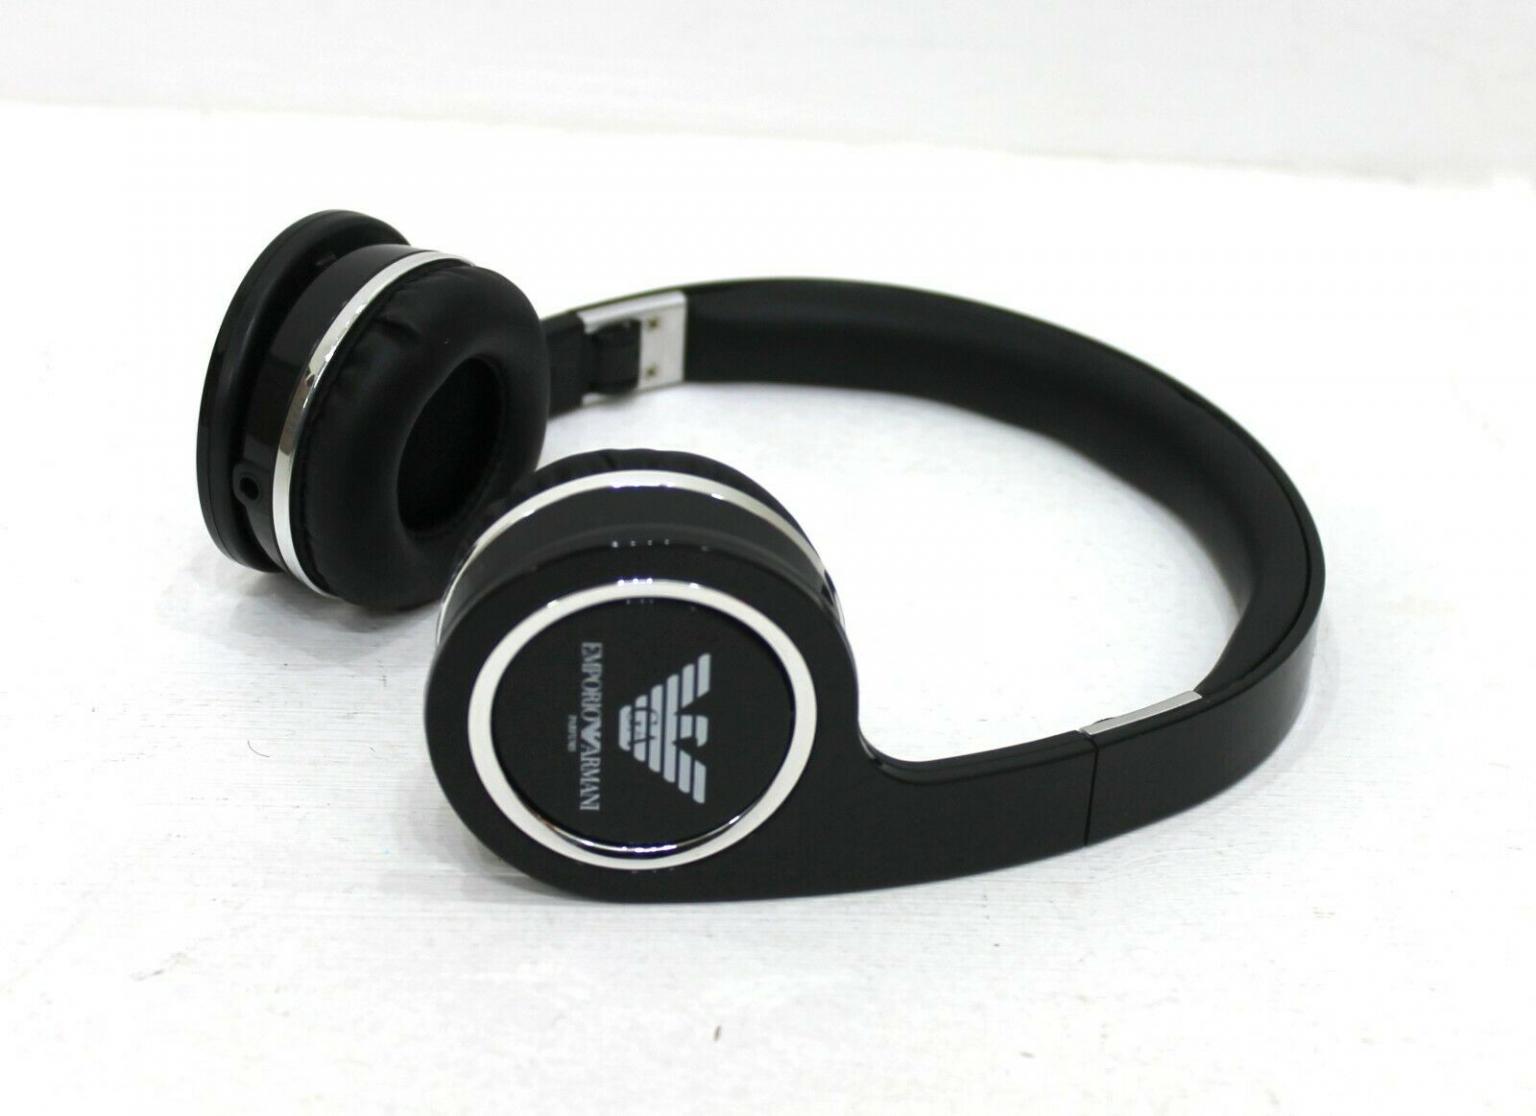 armani headphones